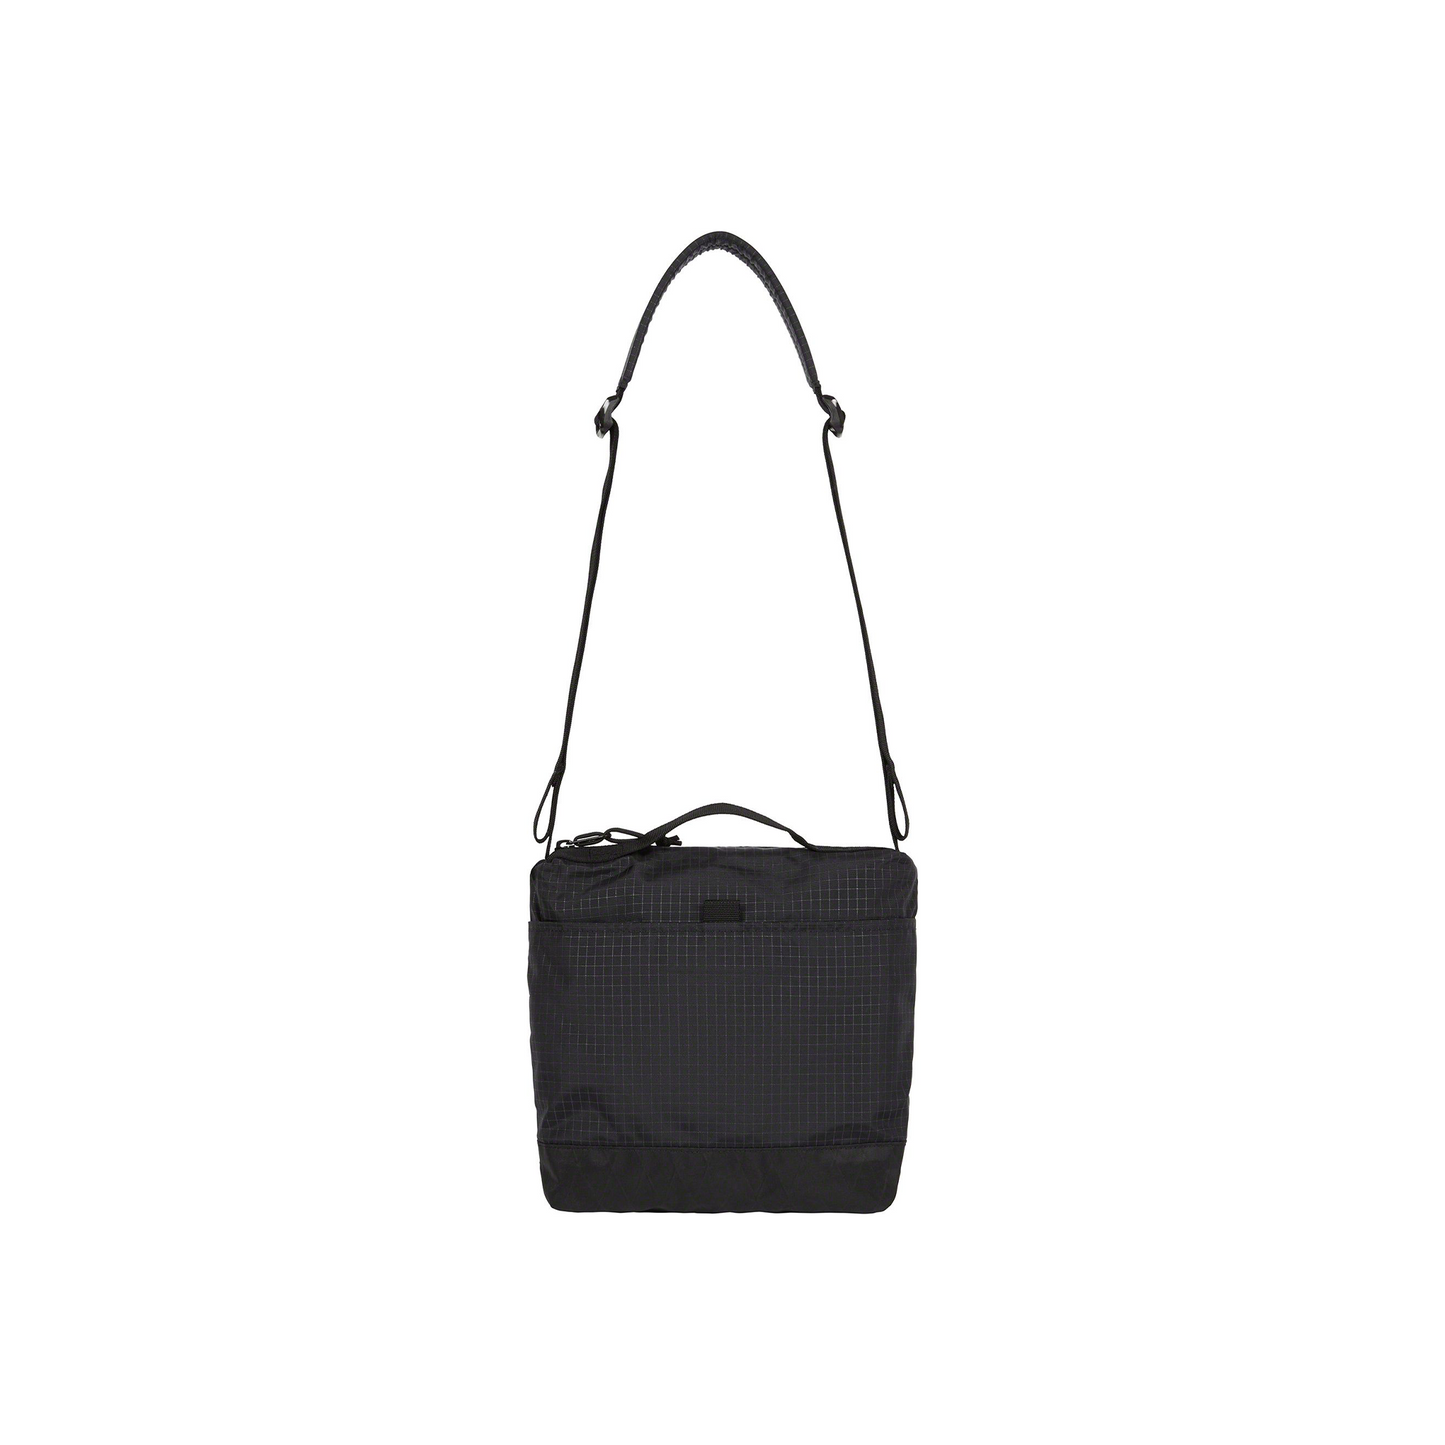 Supreme Shoulder Bag Black (FW23)